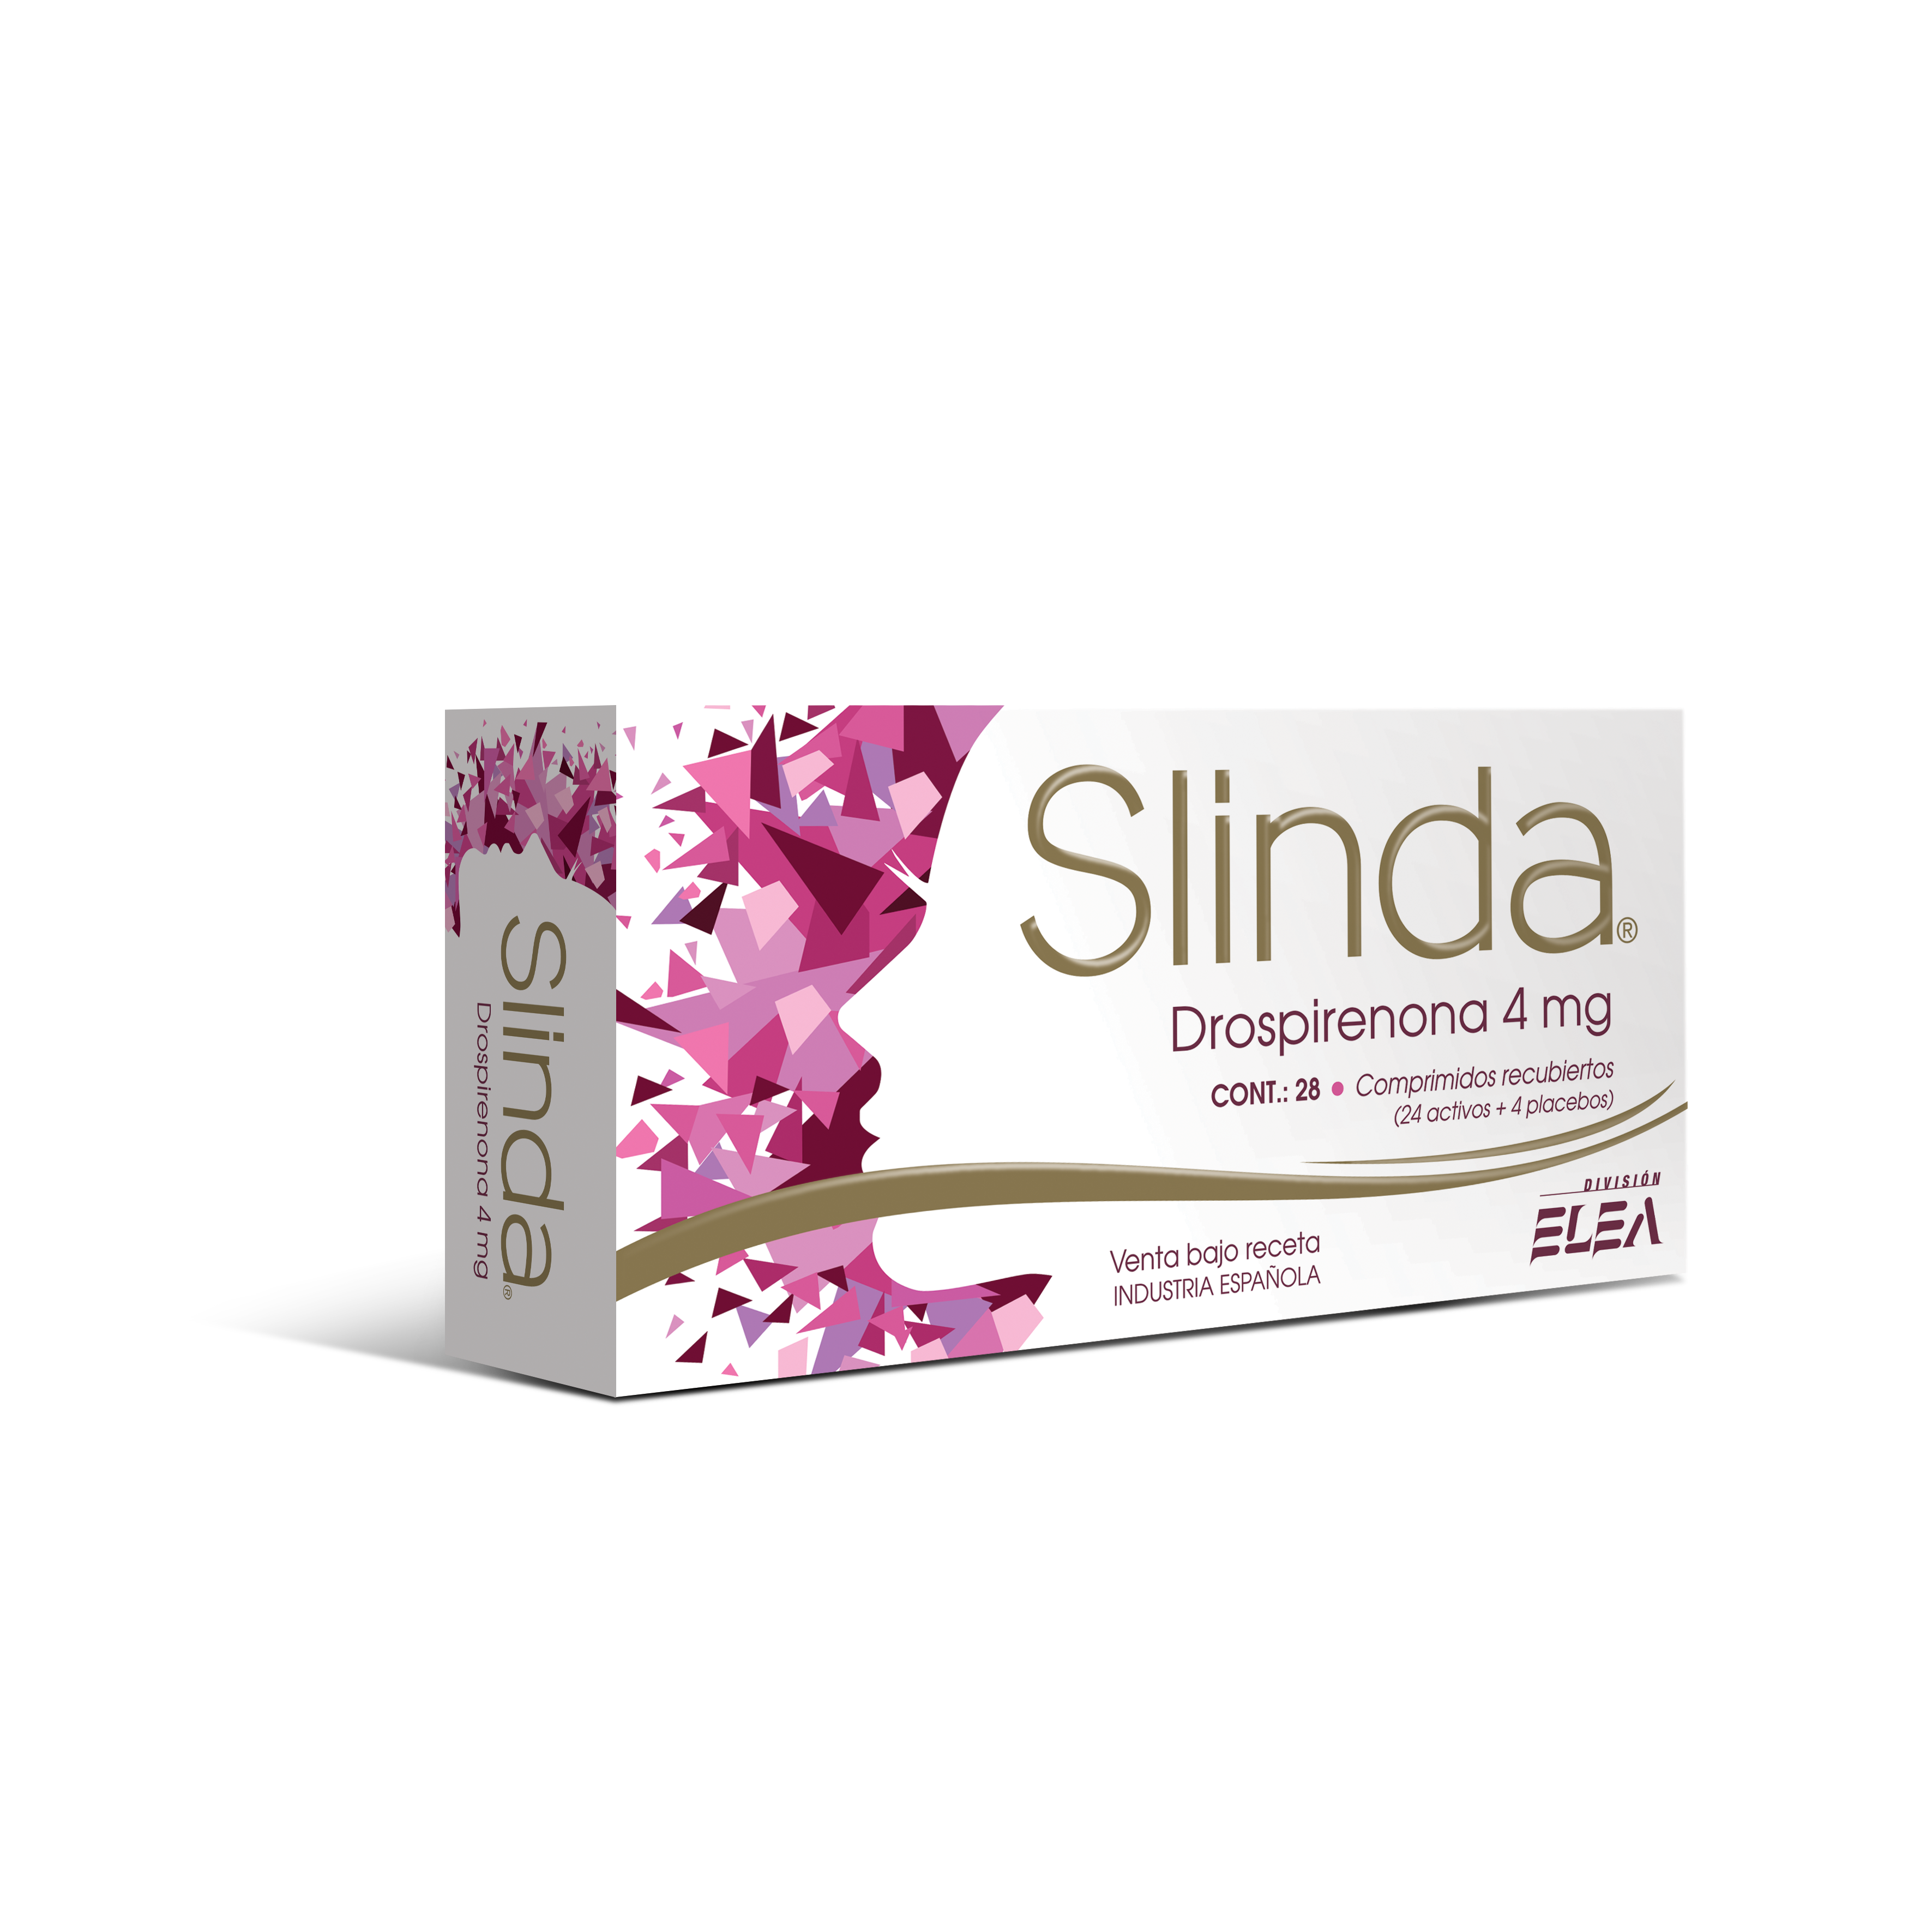 Llegó Slinda. El primer anticonceptivo libre de estrógenos